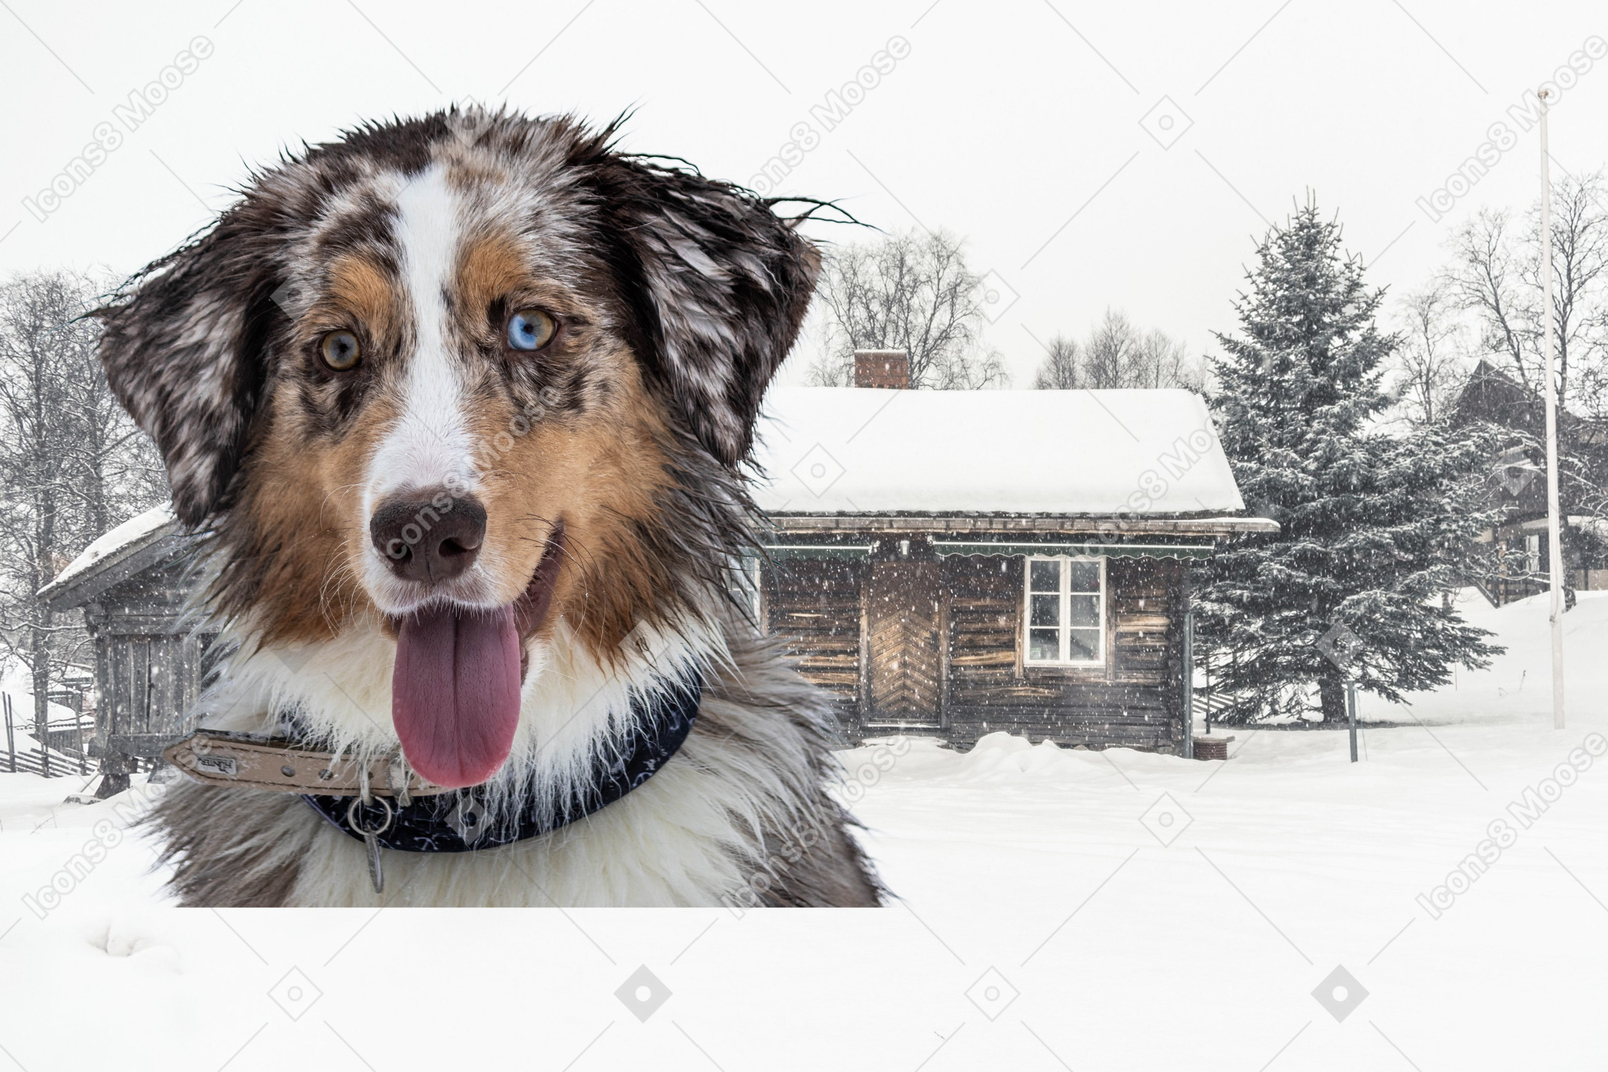 Hund im winter draußen spazieren gehen